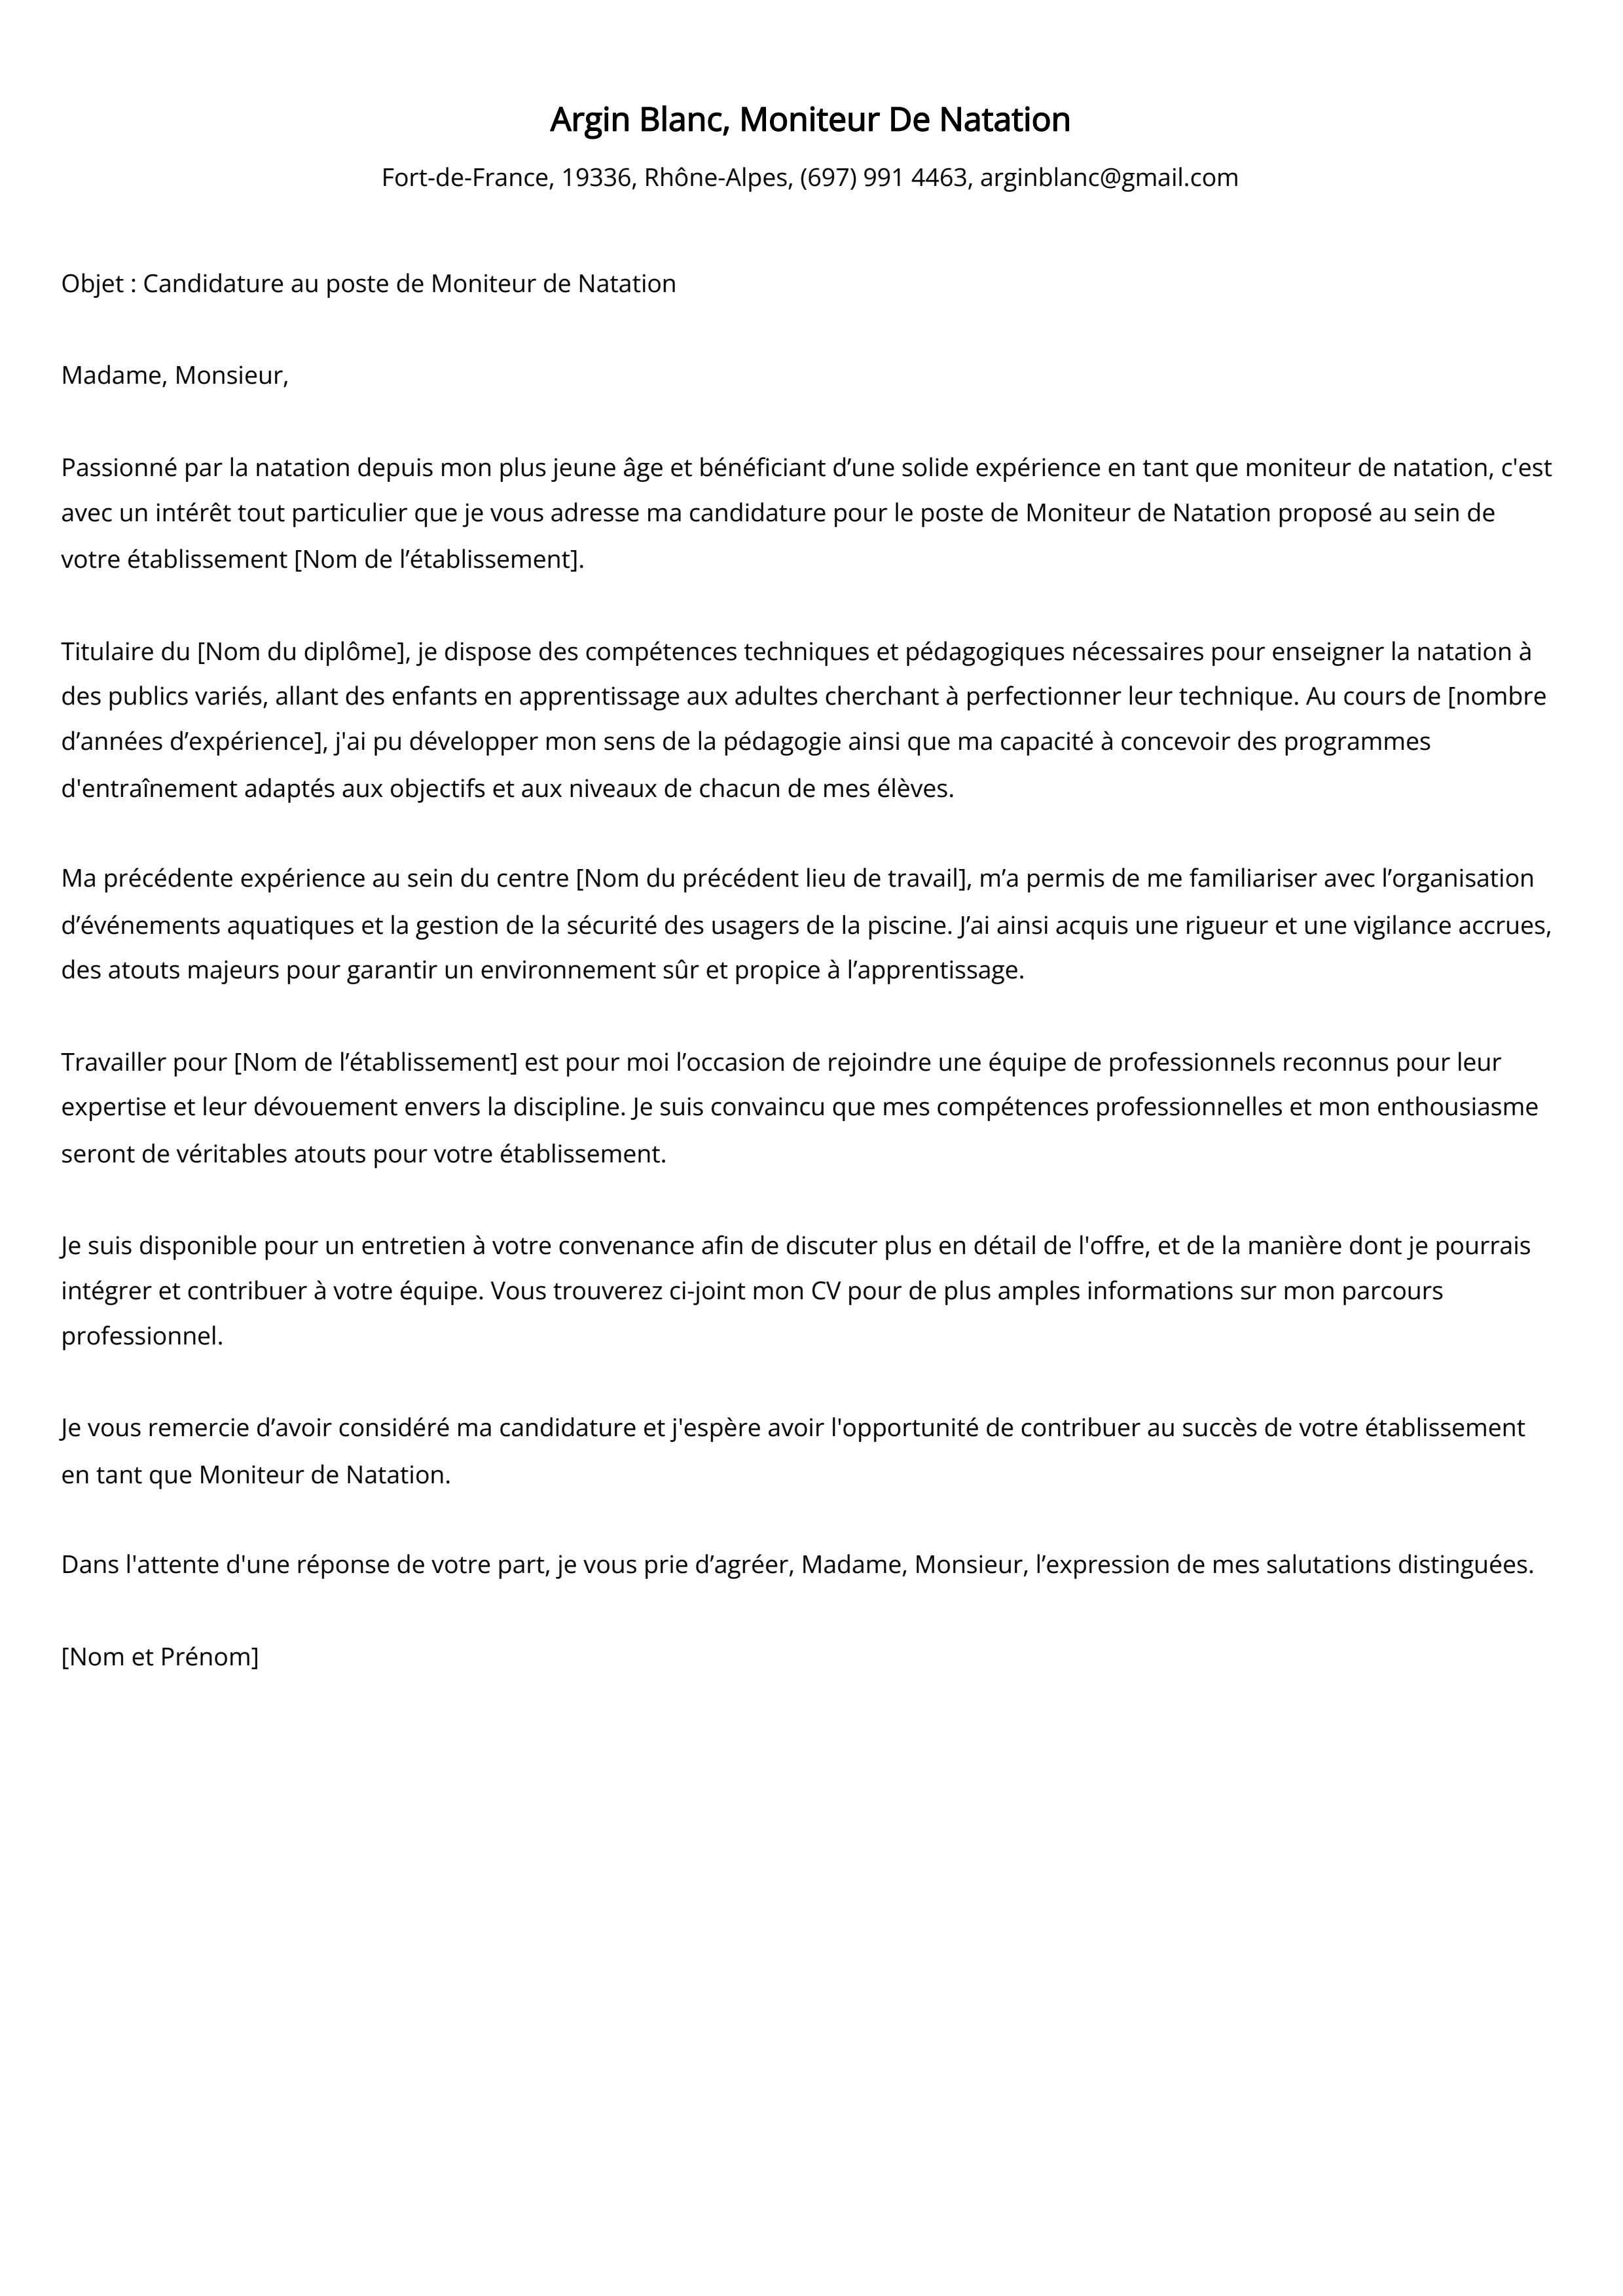 Moniteur De Natation Cover Letter Example